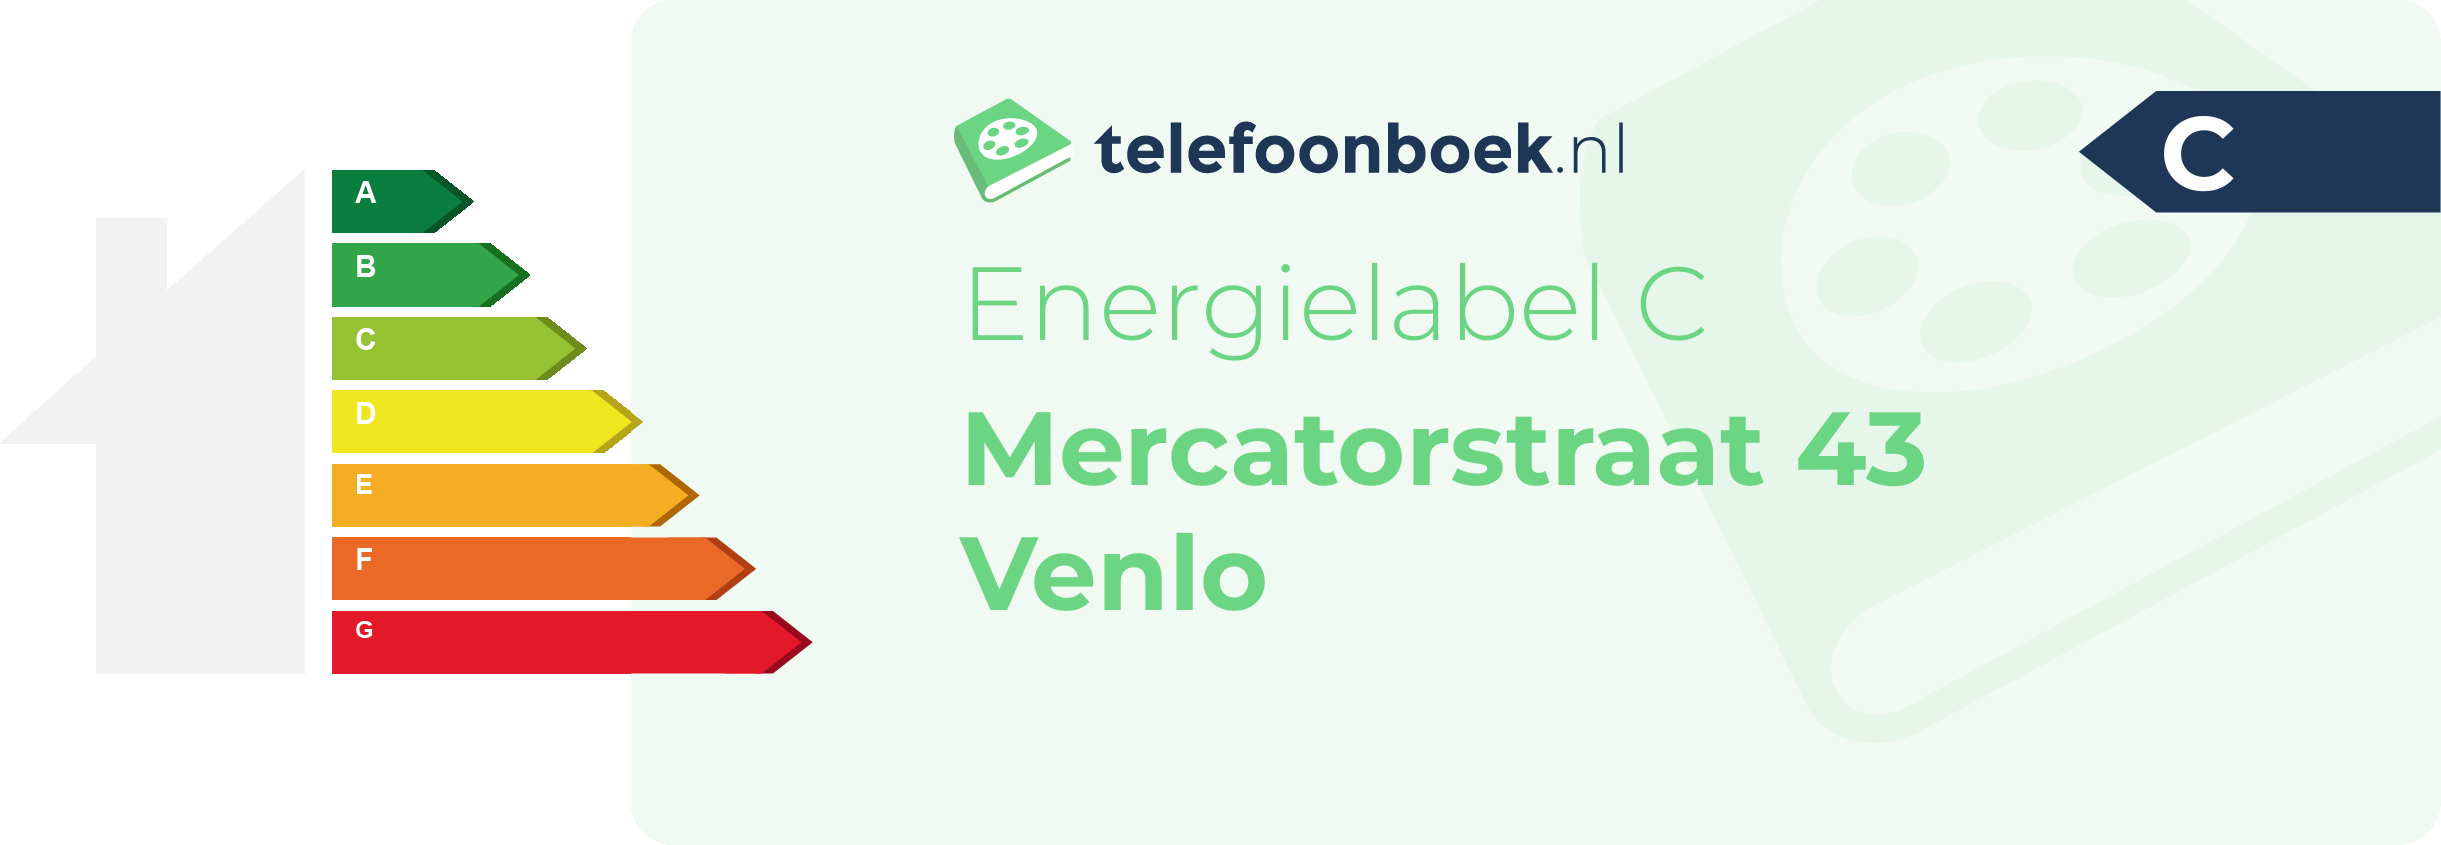 Energielabel Mercatorstraat 43 Venlo